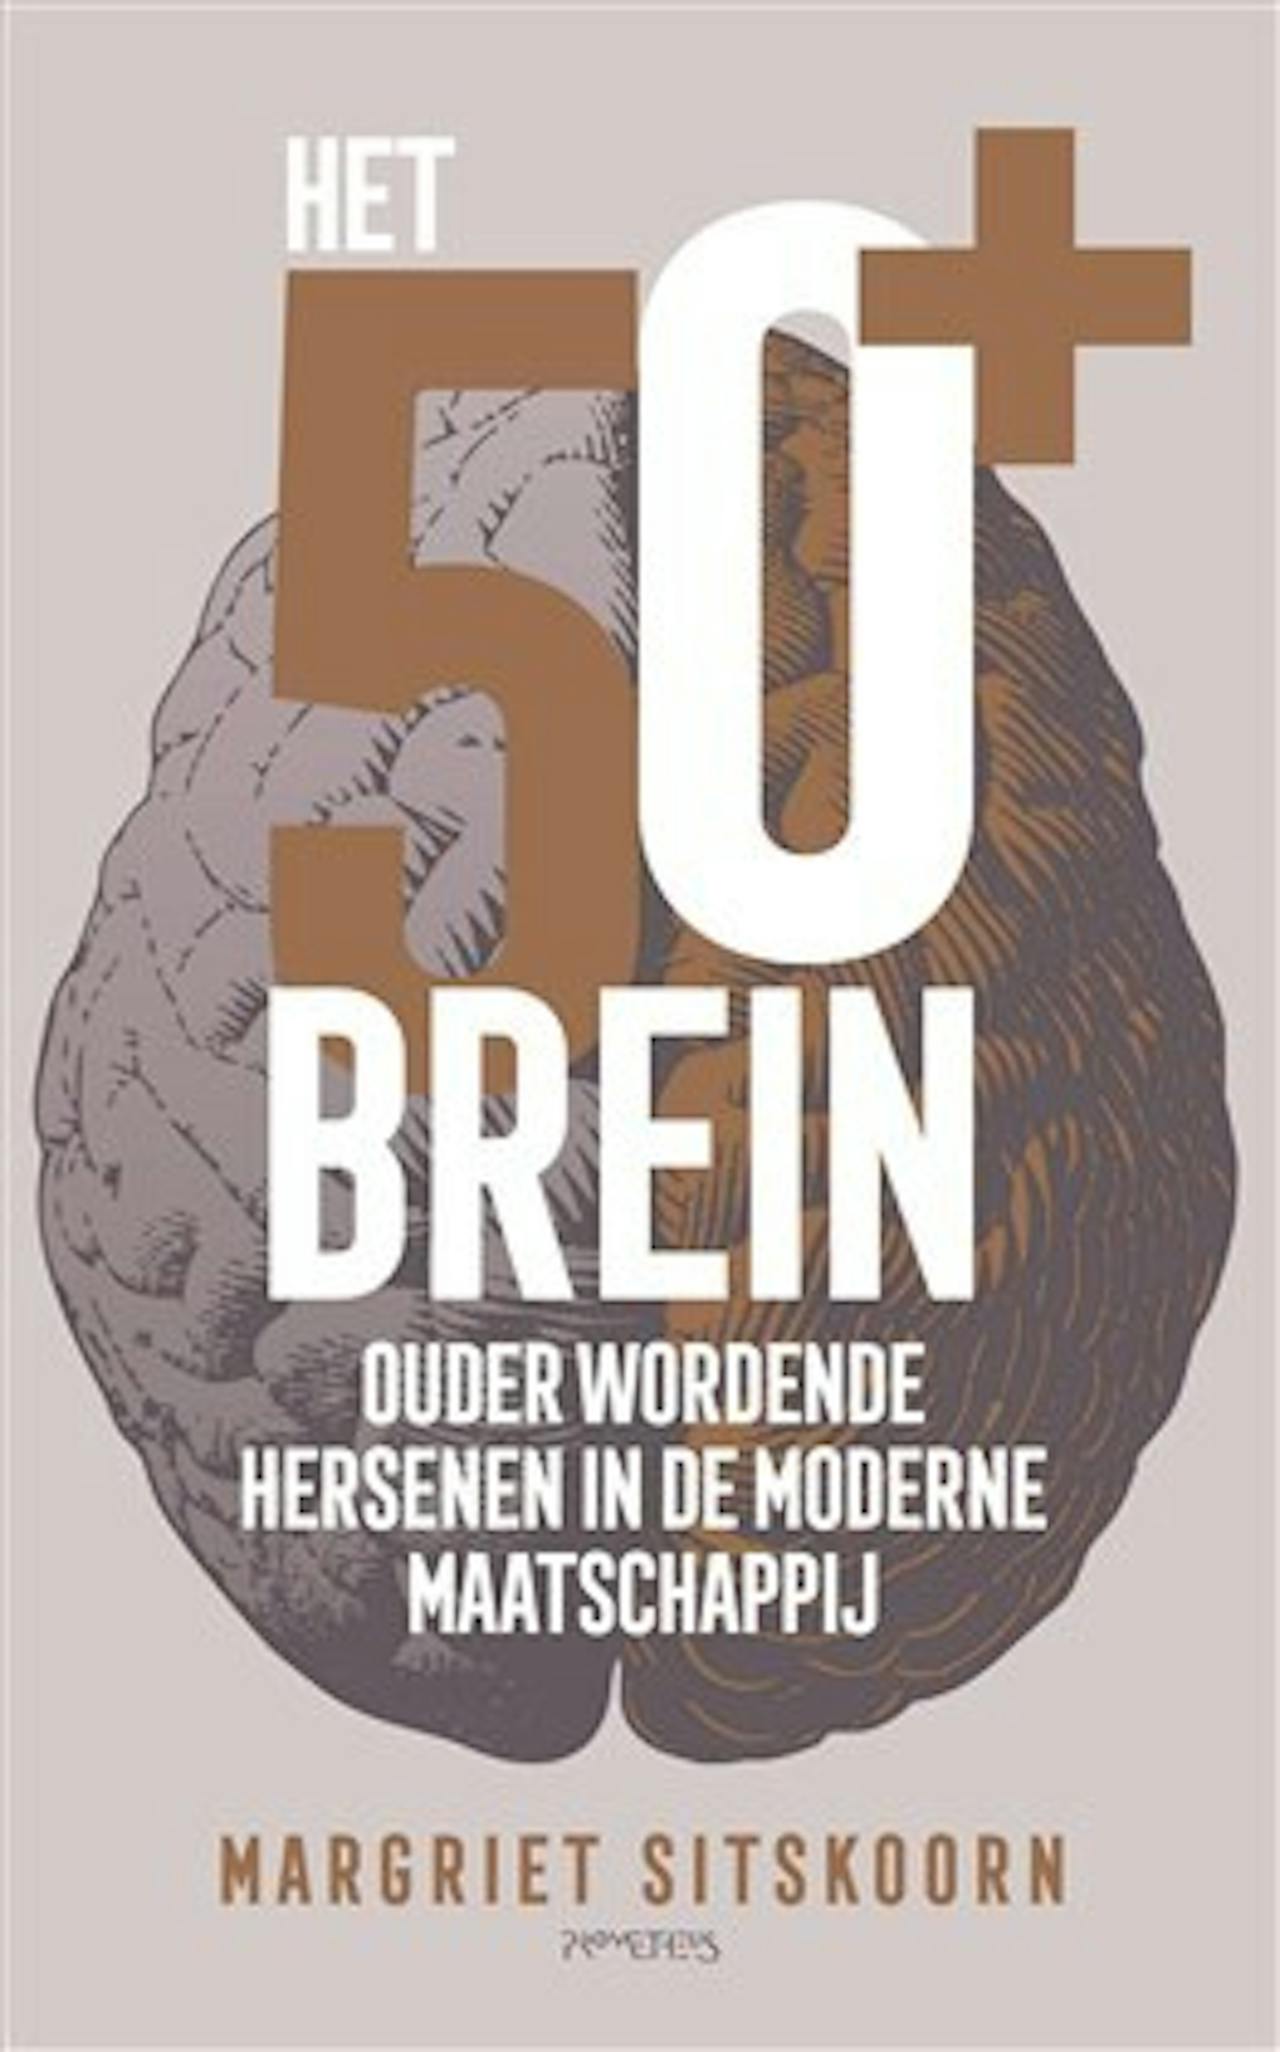 Een cover van een boek van Margriet Sitskoorn: het 50+ brein. Ouder wordende hersenen in de moderne maatschappij.